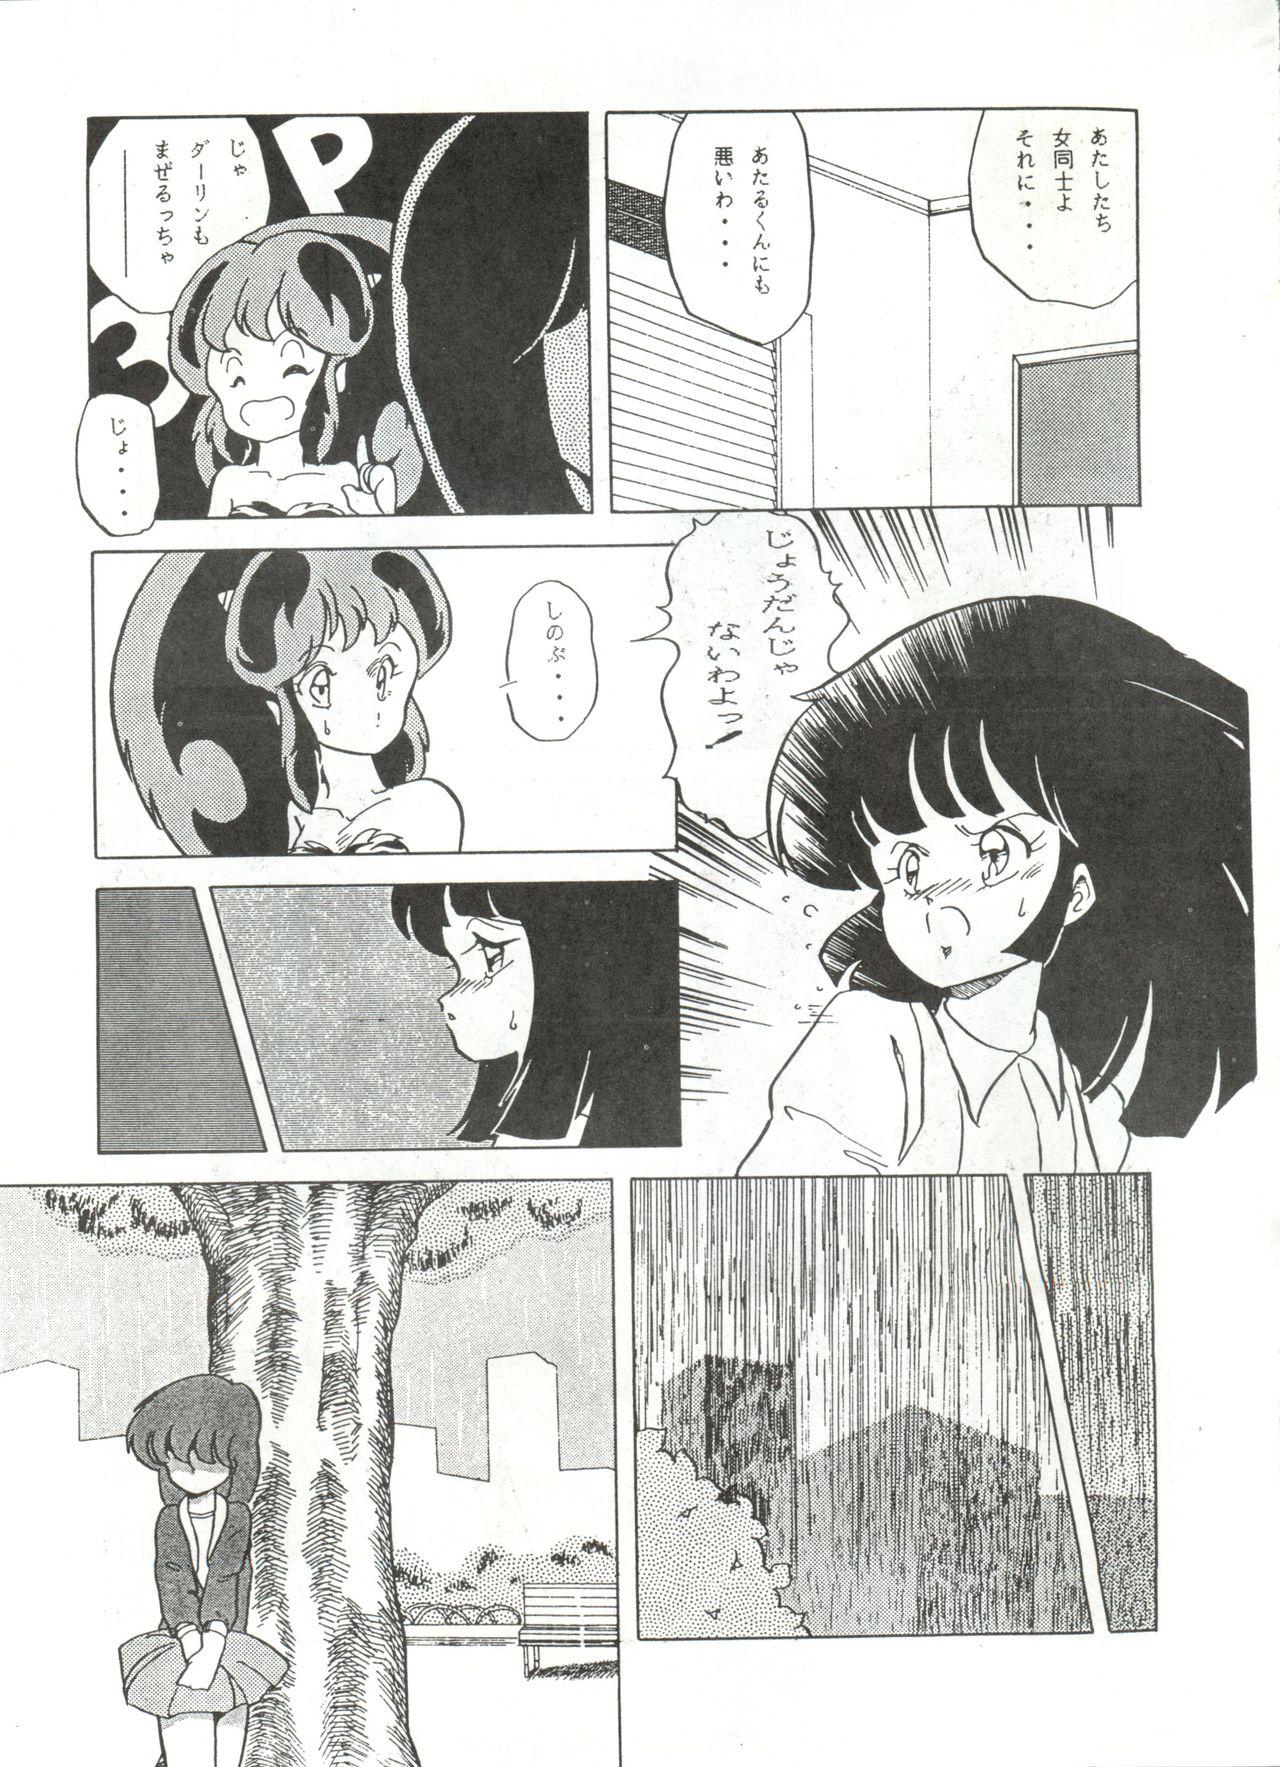 Spit ONAPET 1 - Urusei yatsura Stepsis - Page 7